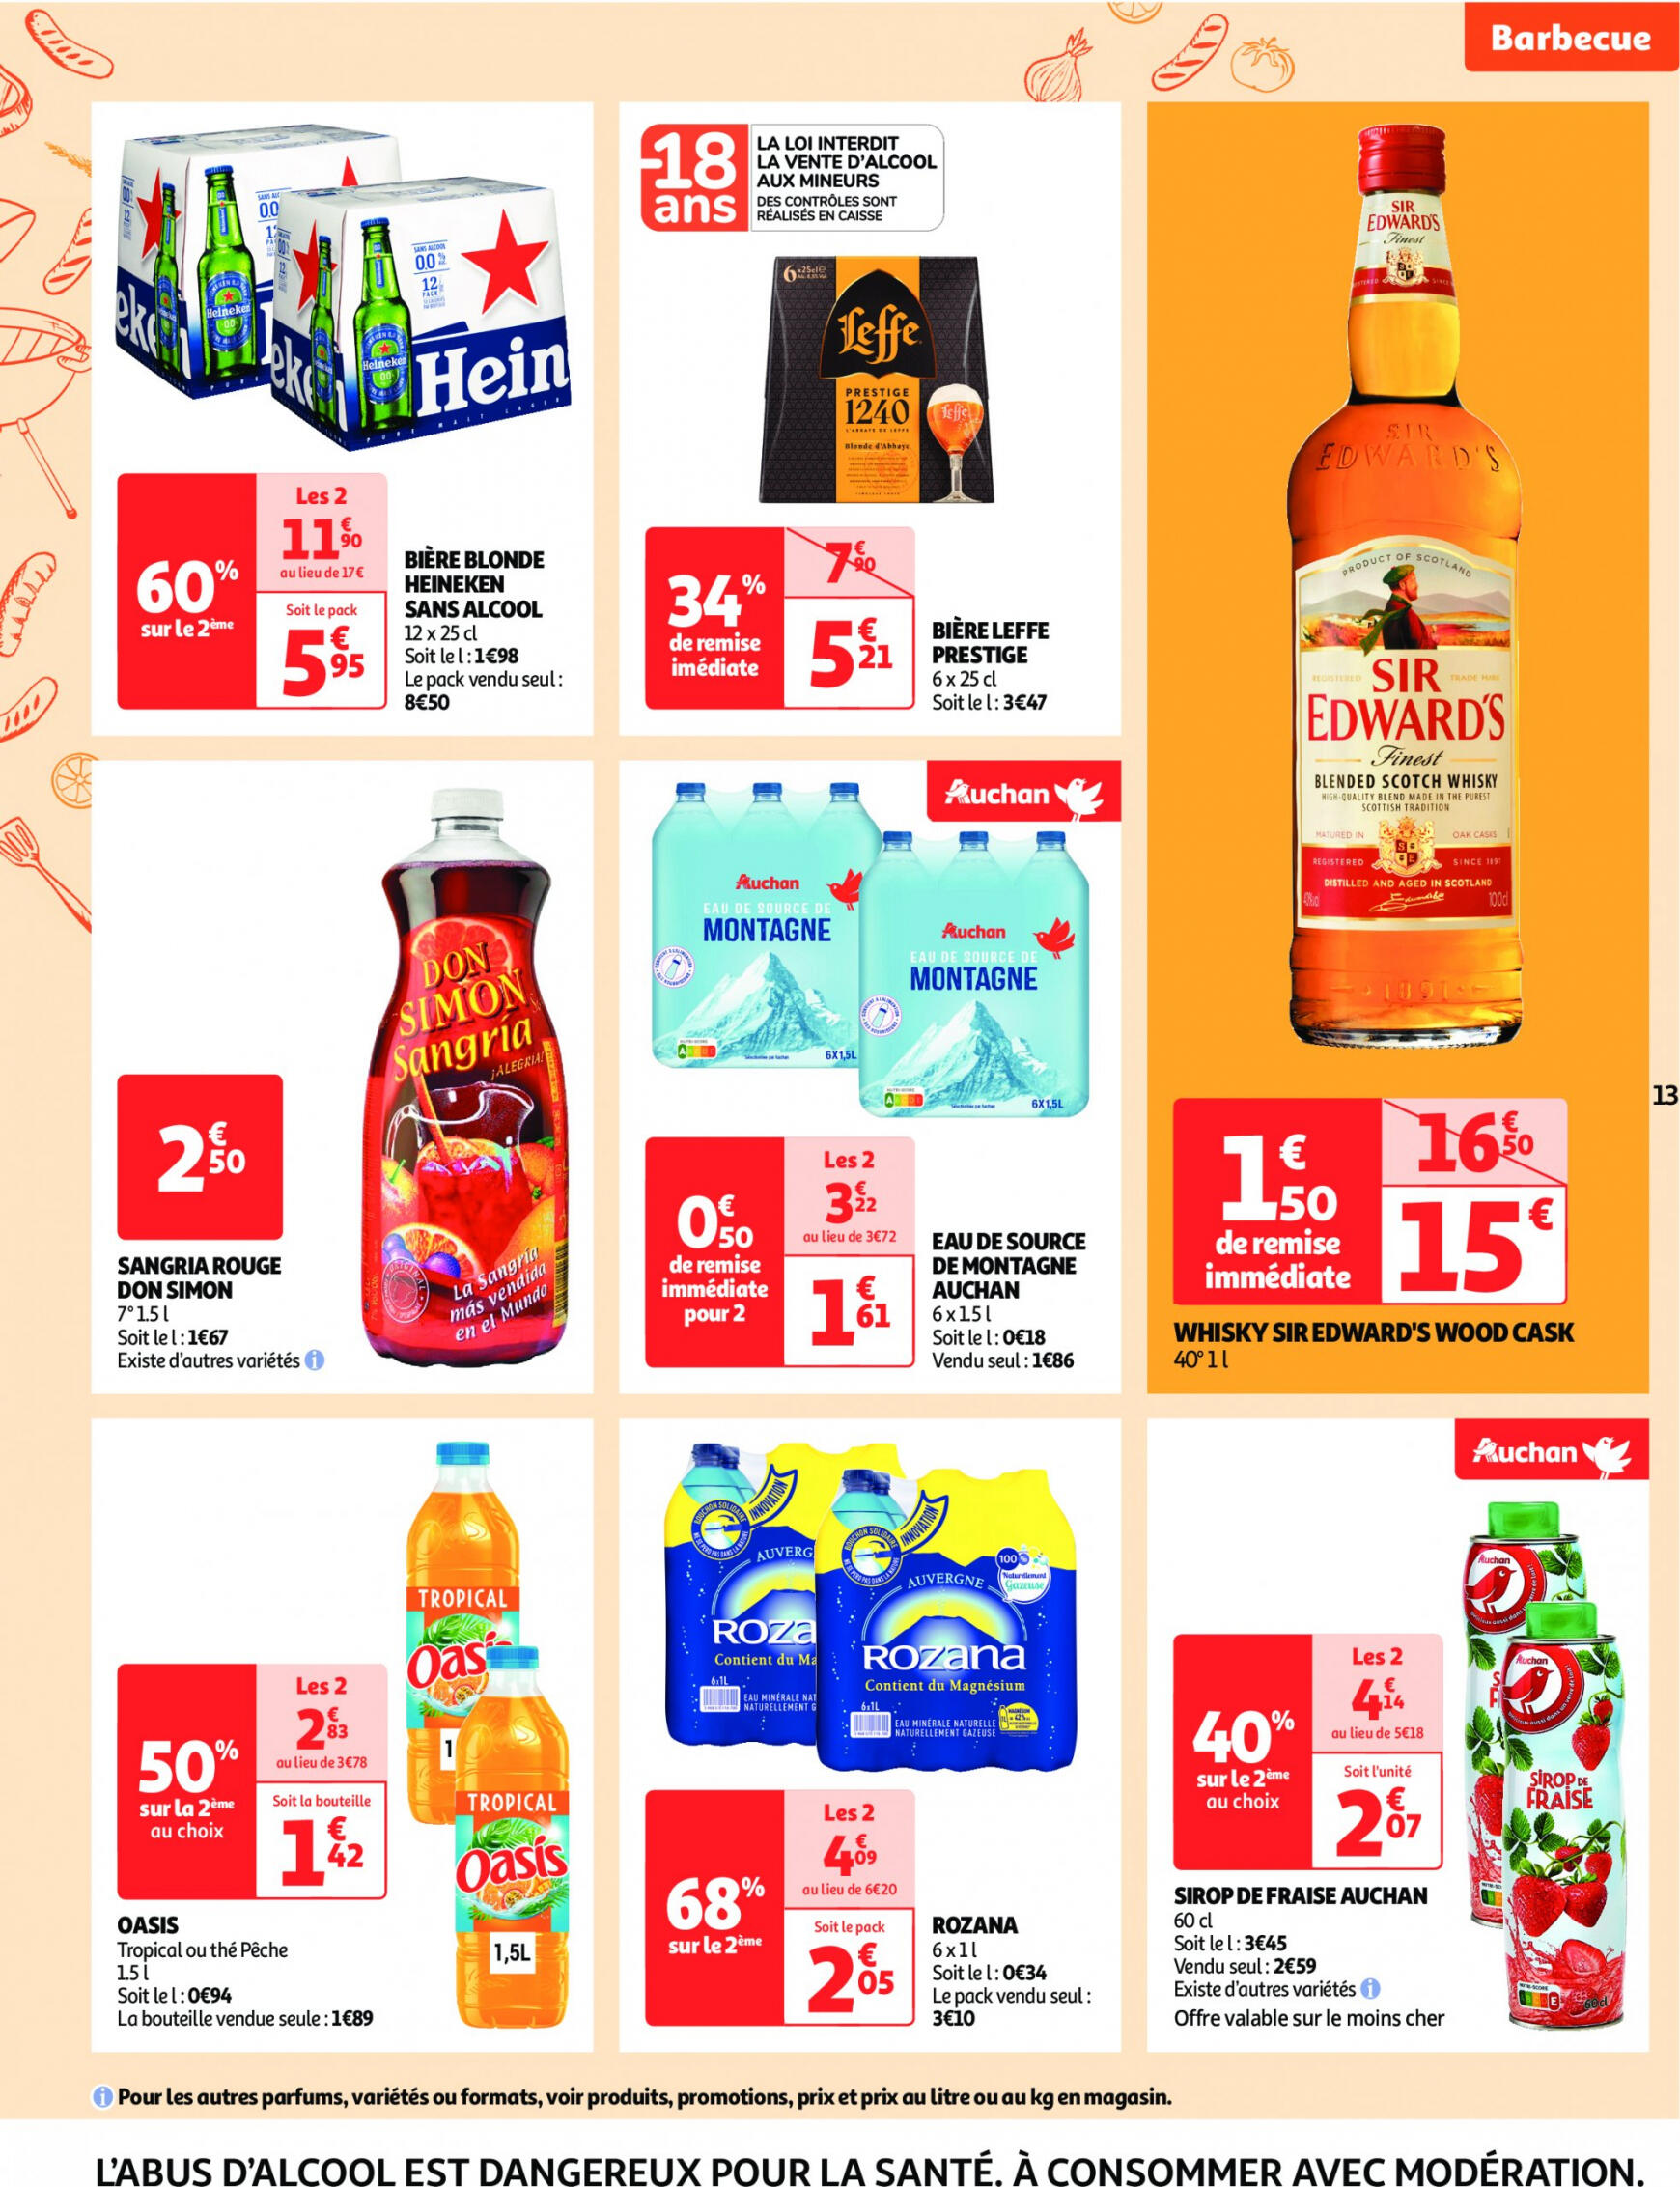 auchan - Auchan supermarché - Faites le plein de bonnes affaires folder huidig 22.05. - 26.05. - page: 13